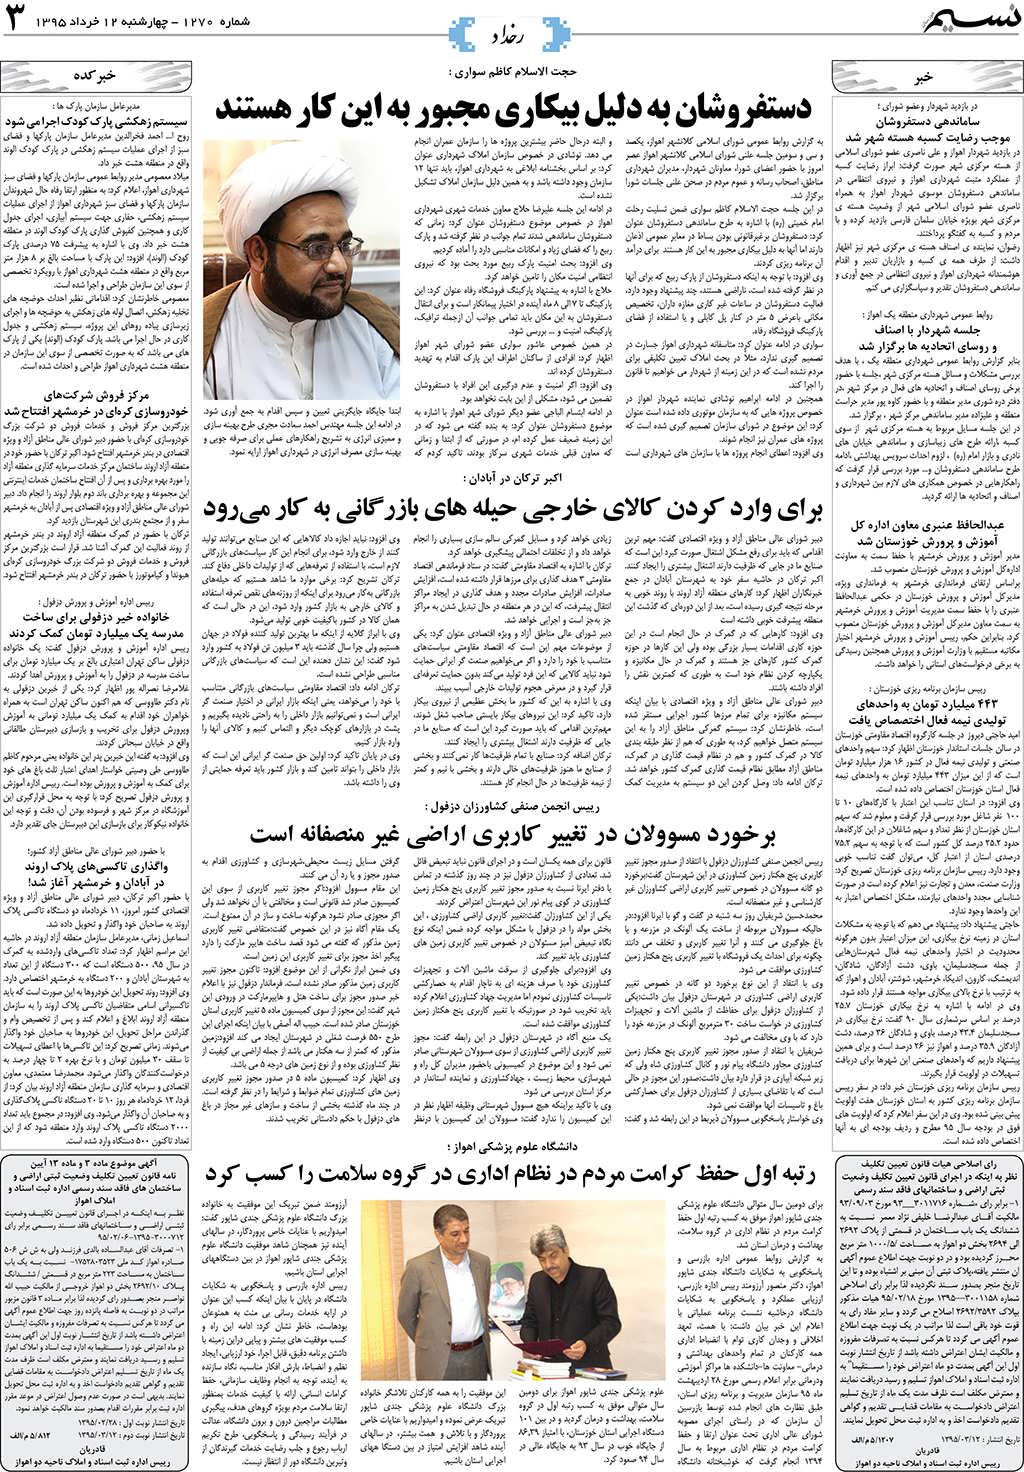 صفحه رخداد روزنامه نسیم شماره 1270